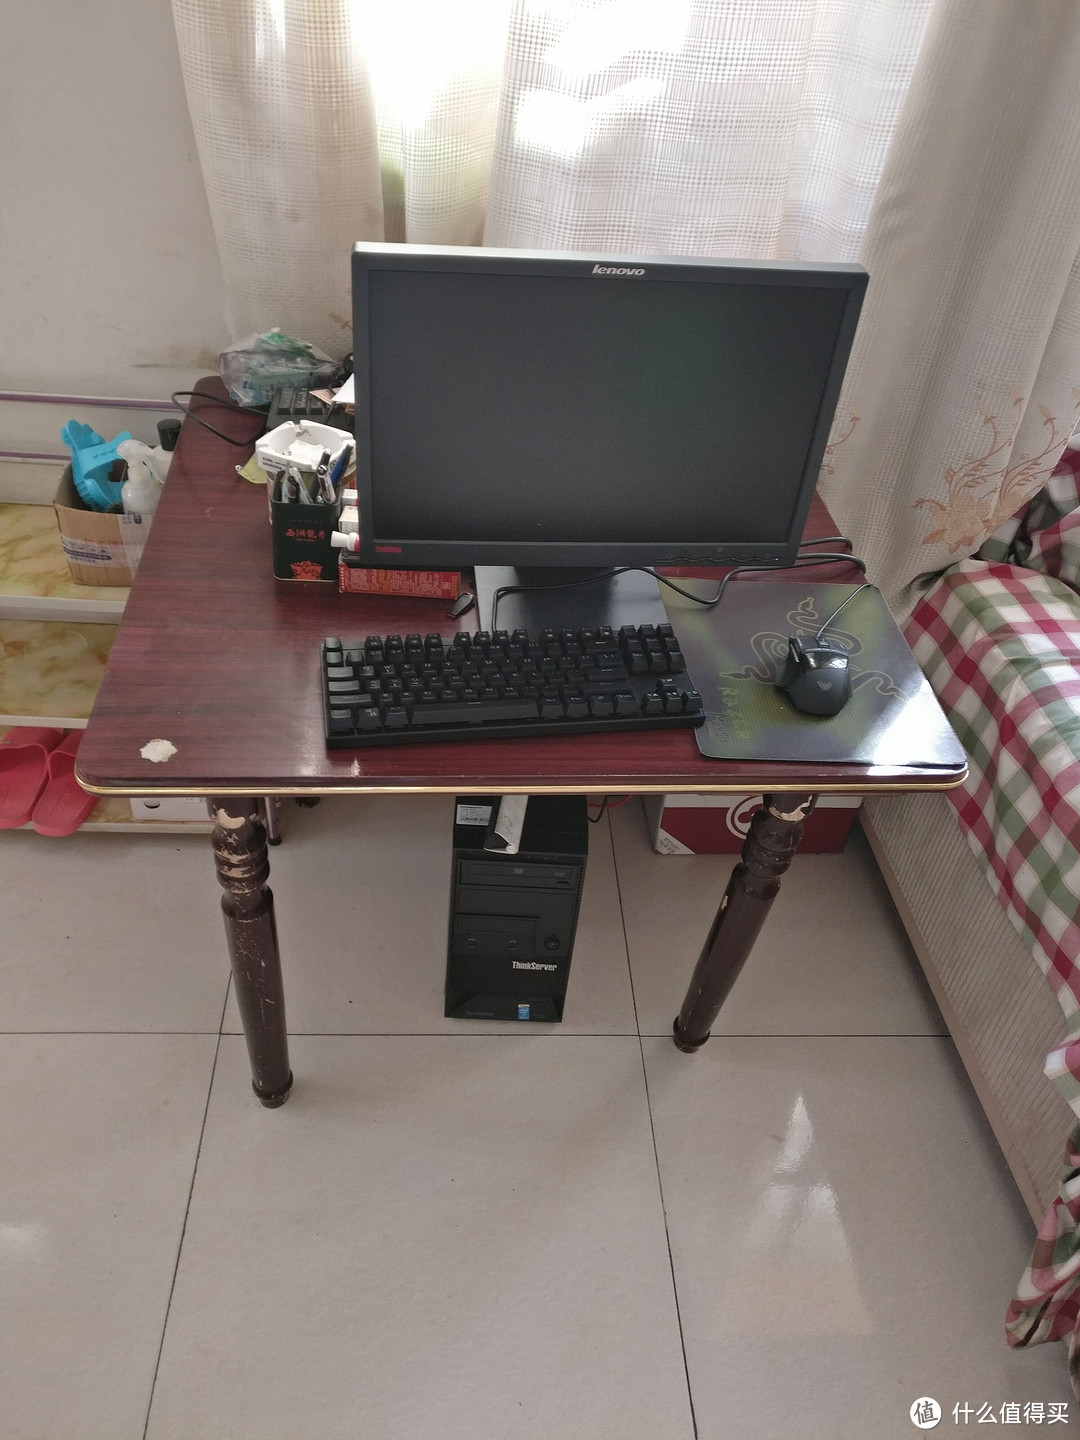 高帅富的电脑和电脑桌，一桌一世界啊！